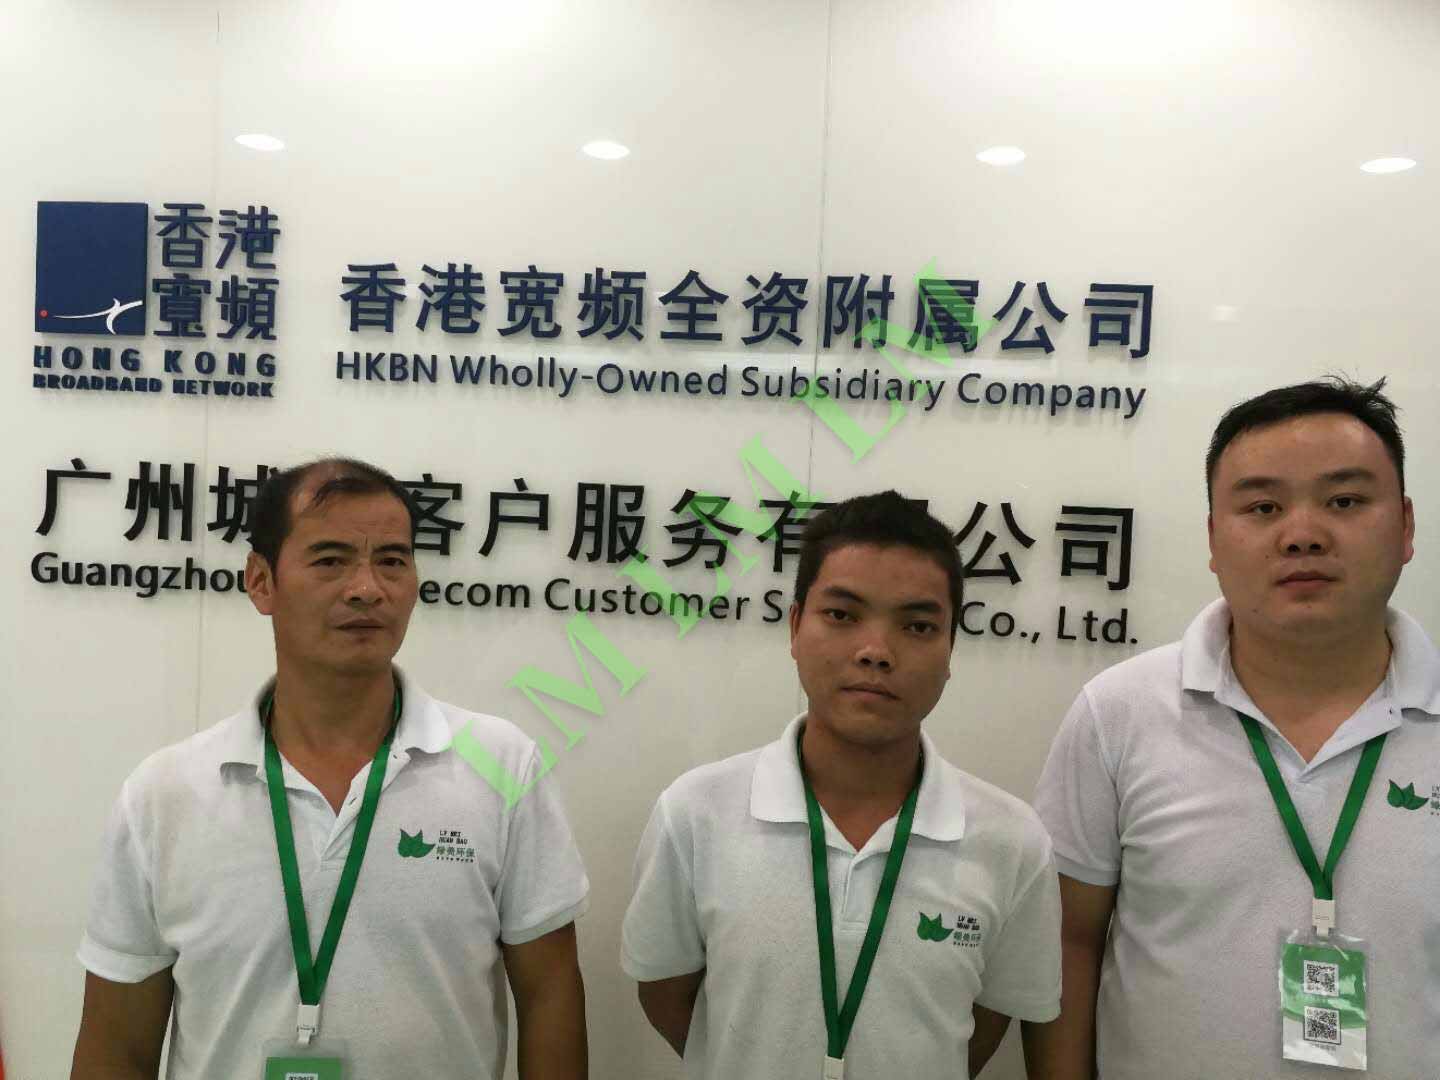 香港宽频广州城电客户服务有限公司治理工程